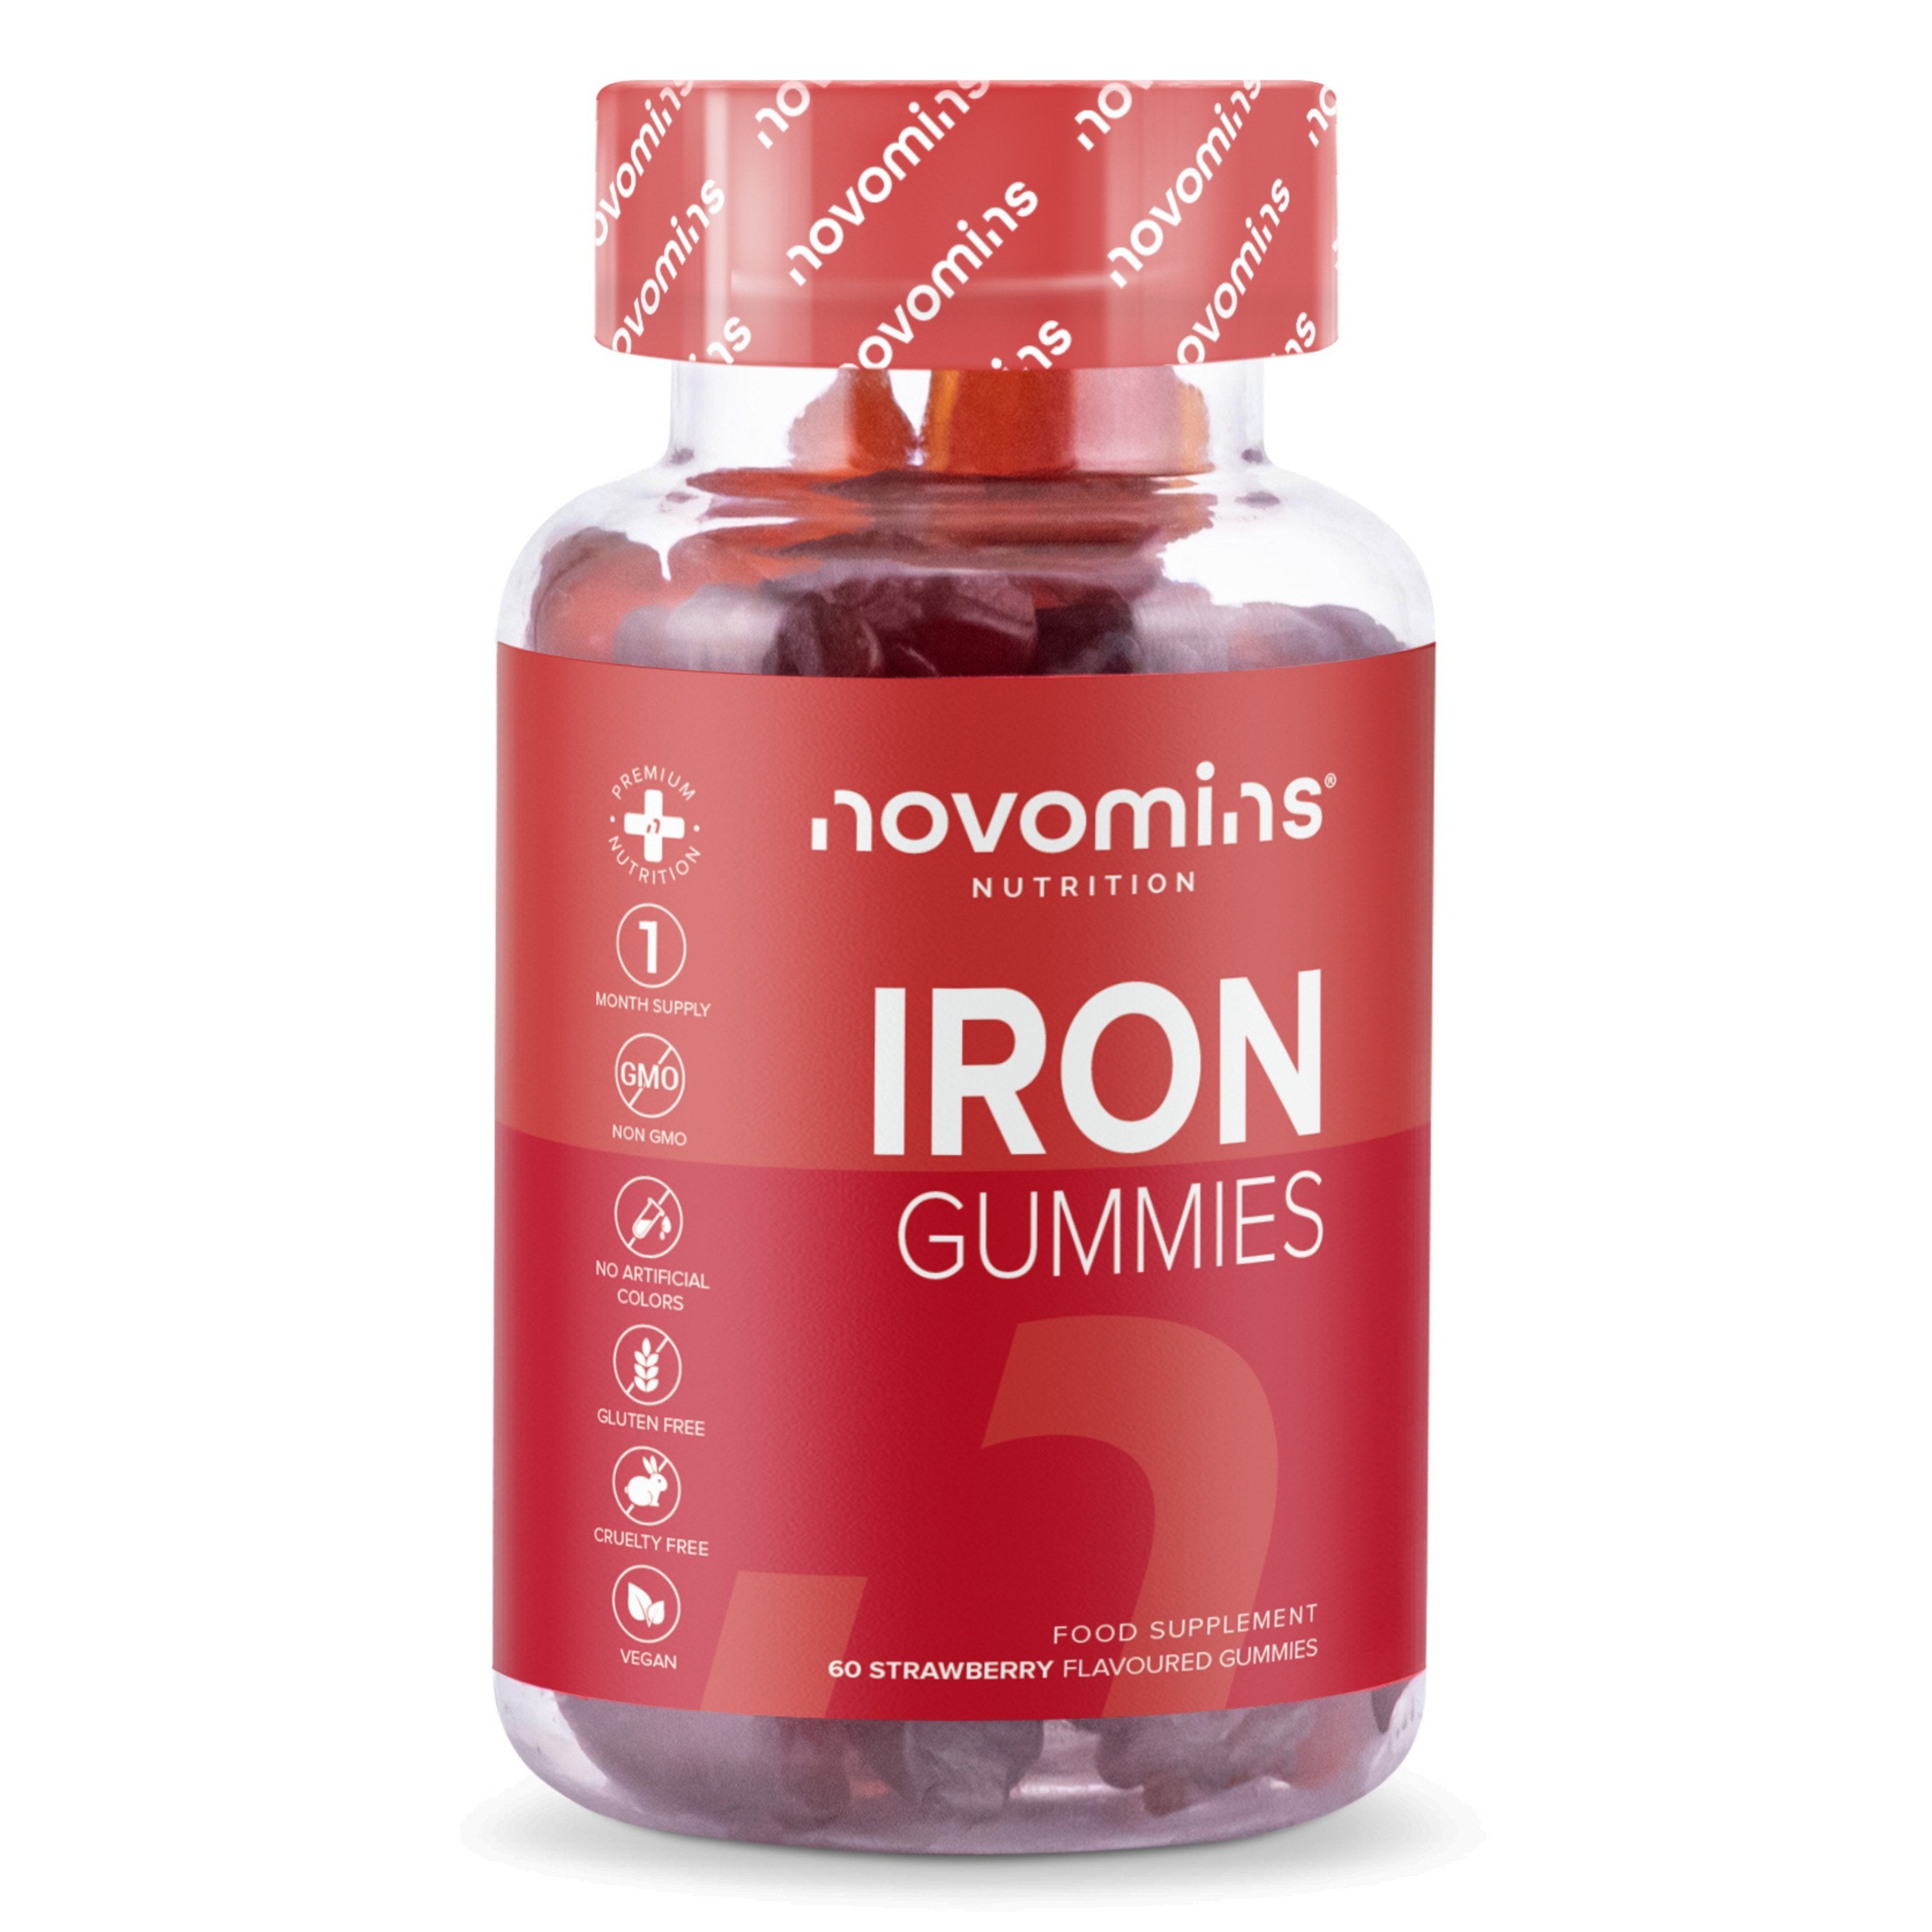 Novomins Iron Gummies